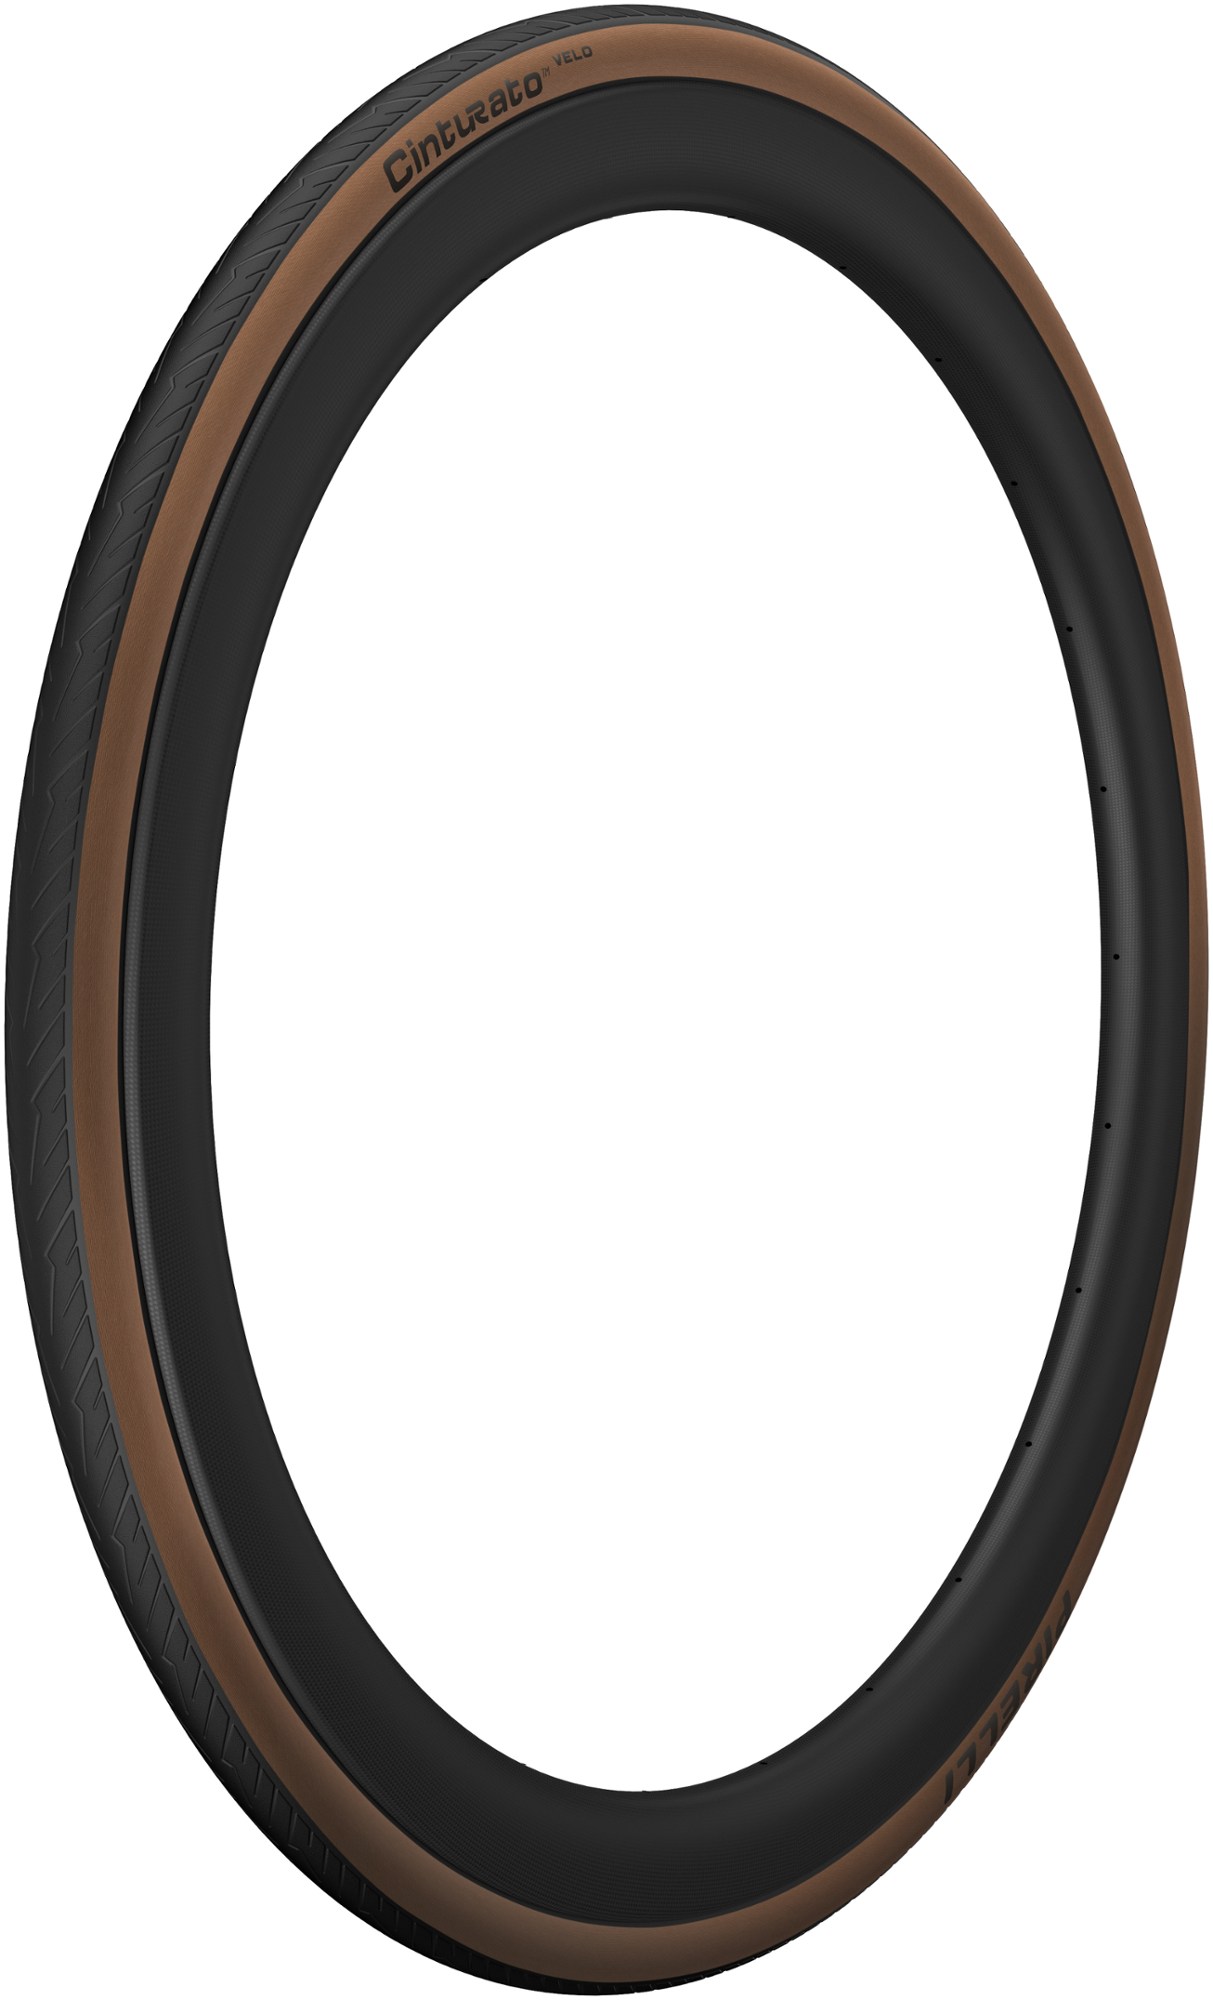 цена Шина Cinturato Velo — 700c x 28 — коричневая Pirelli, черный